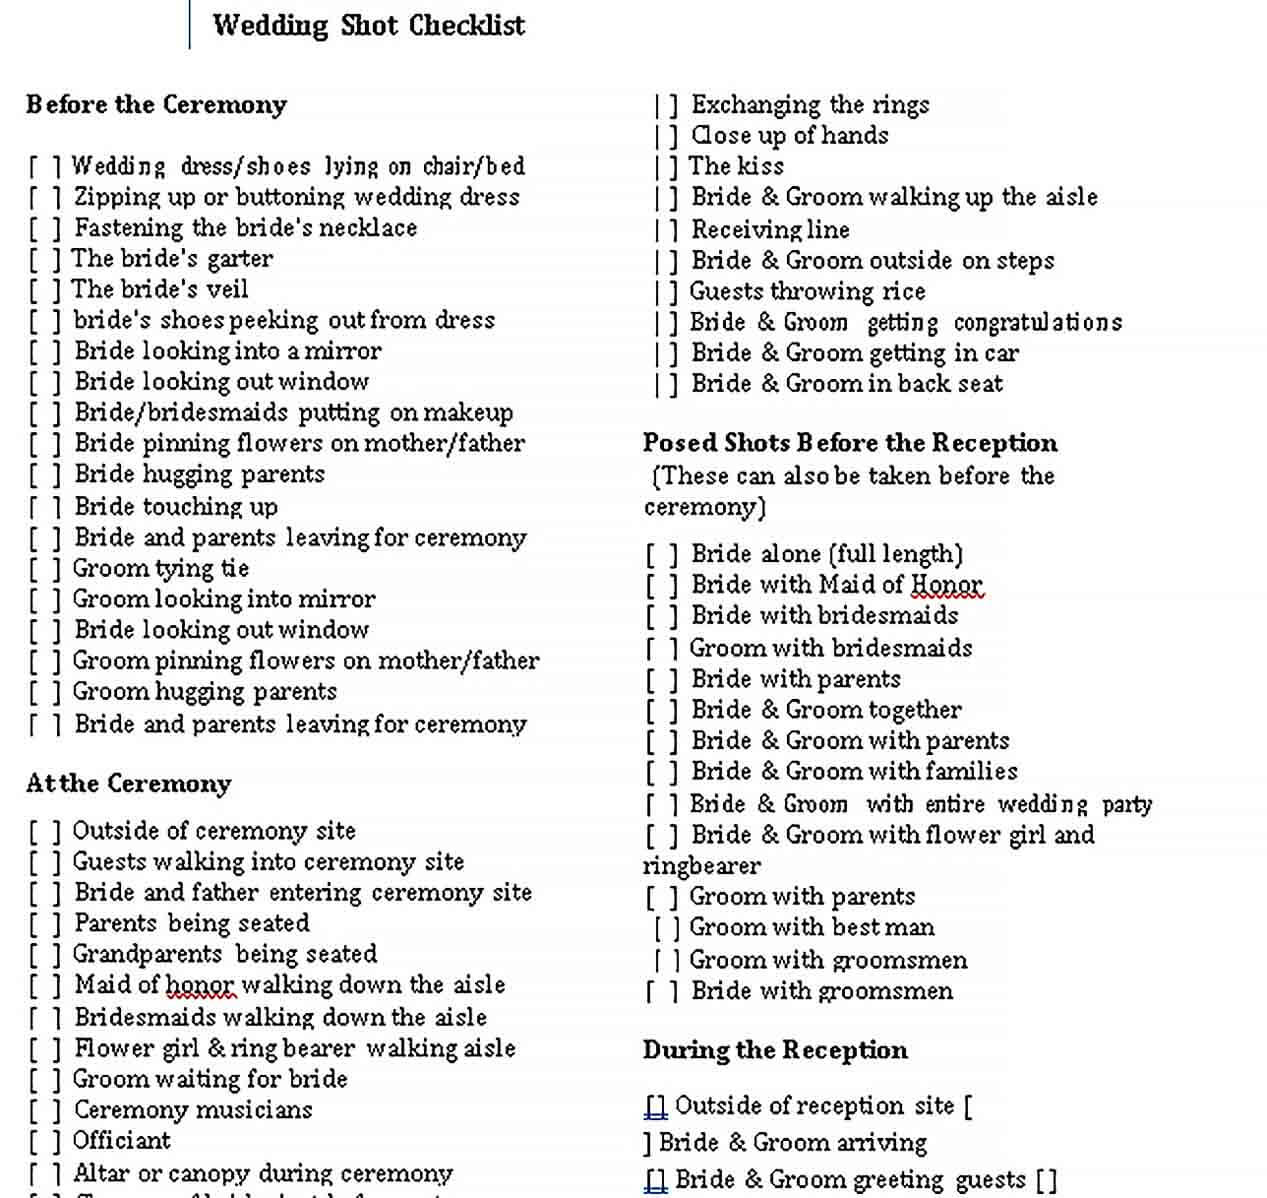 Sample Wedding Shot Checklist